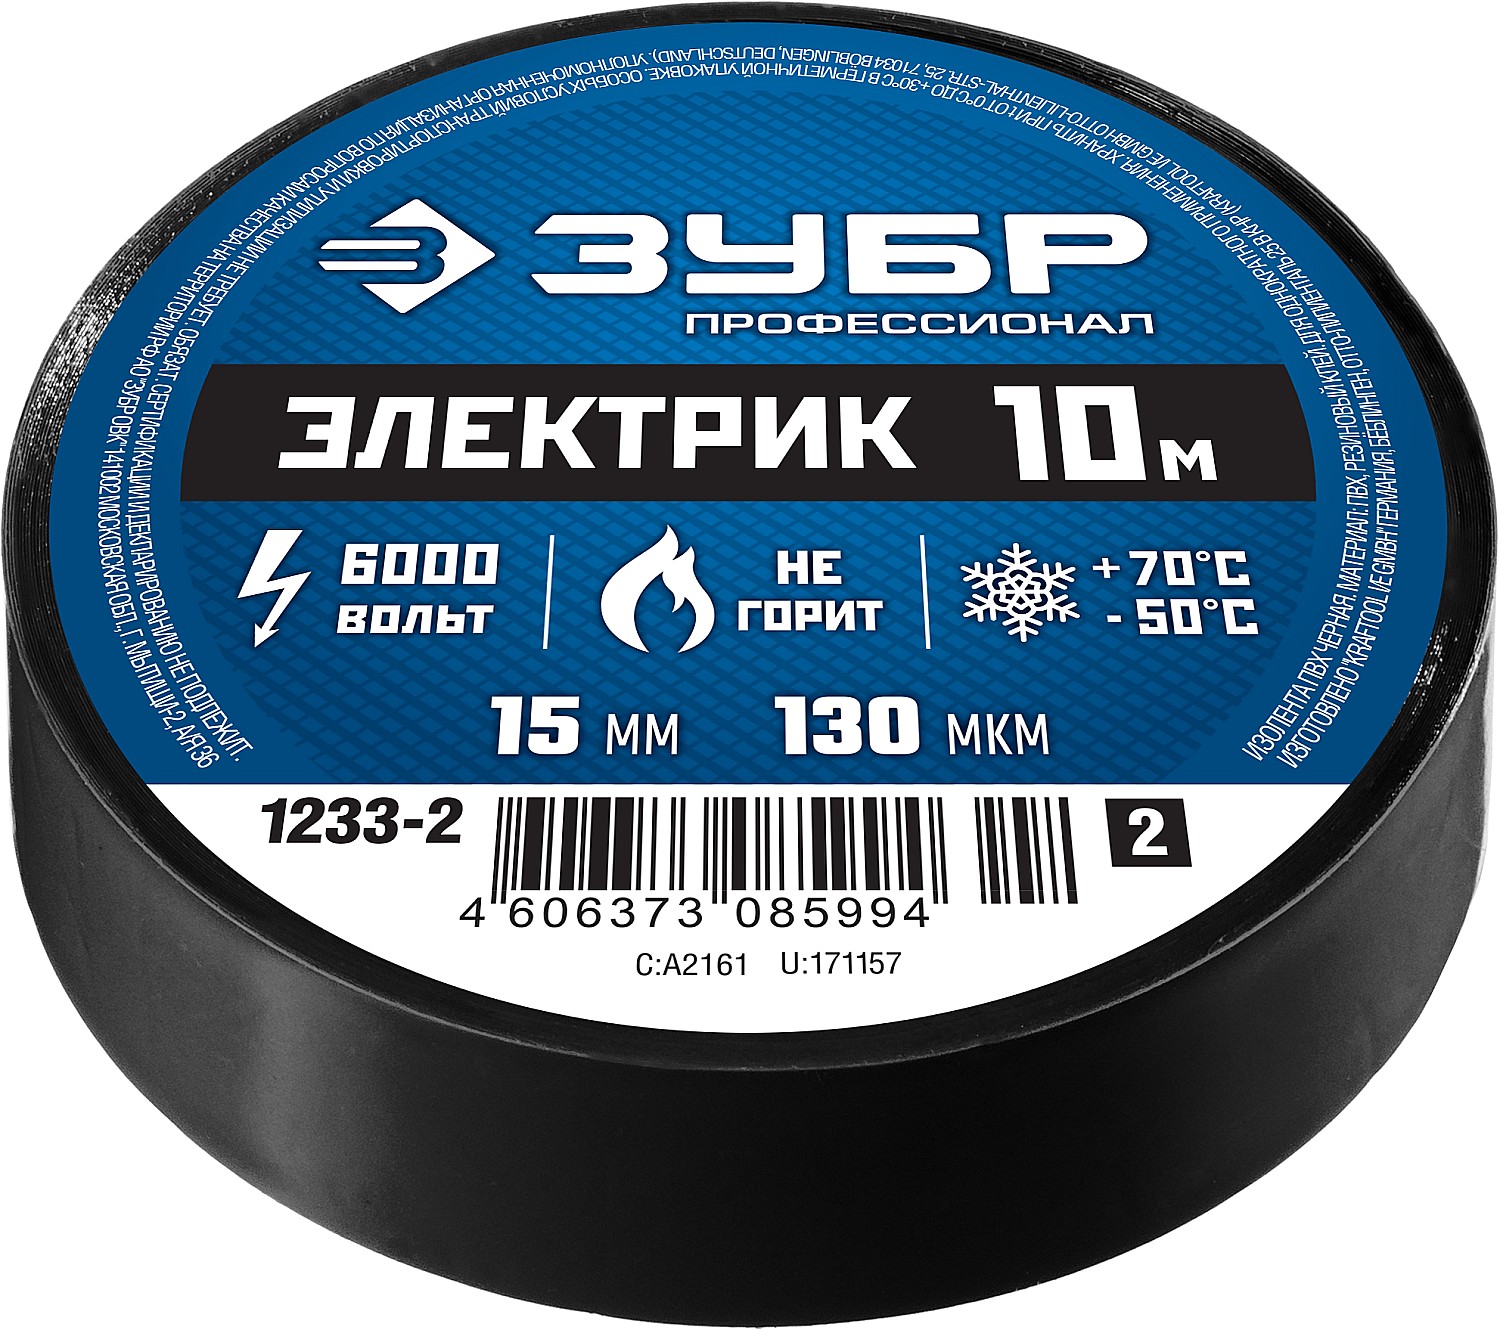 ЗУБР ЭЛЕКТРИК-10, 15 мм х 10 м, 6 000 В, черная, не поддерживает горение, изолента ПВХ, Профессионал (1233-2)